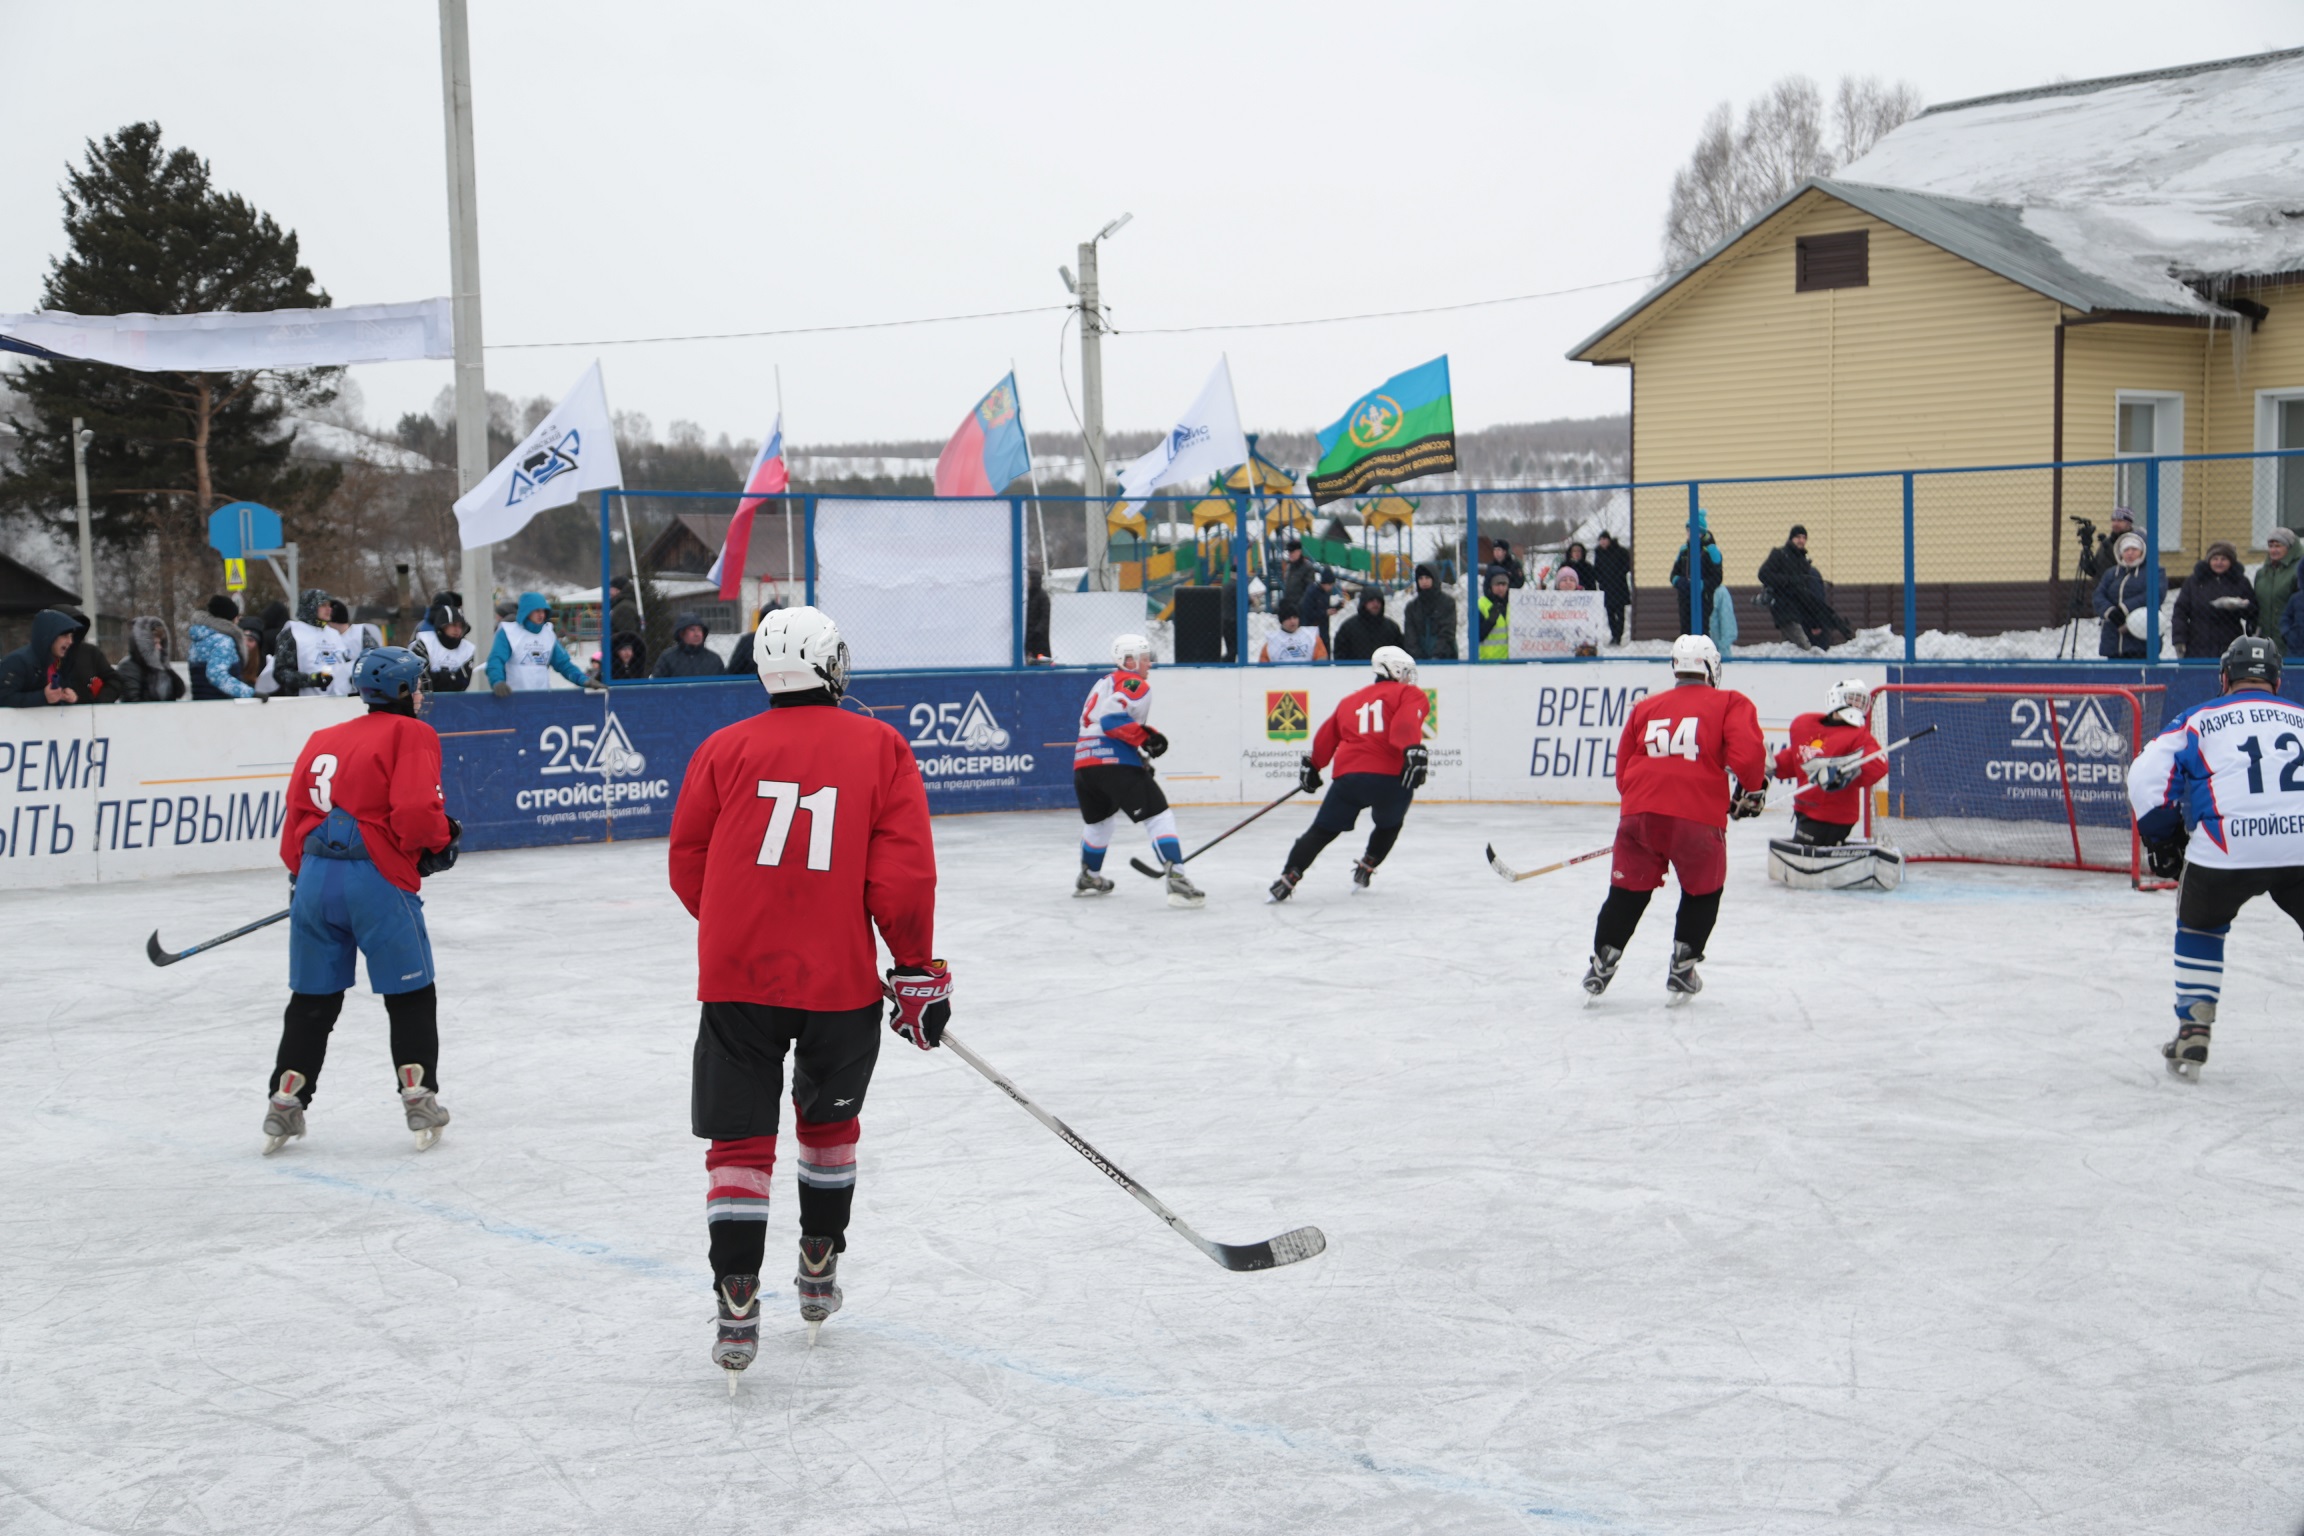 Первую хоккейную коробку в Березовском возводит разрез Барзасское товарищество. Стройсервис